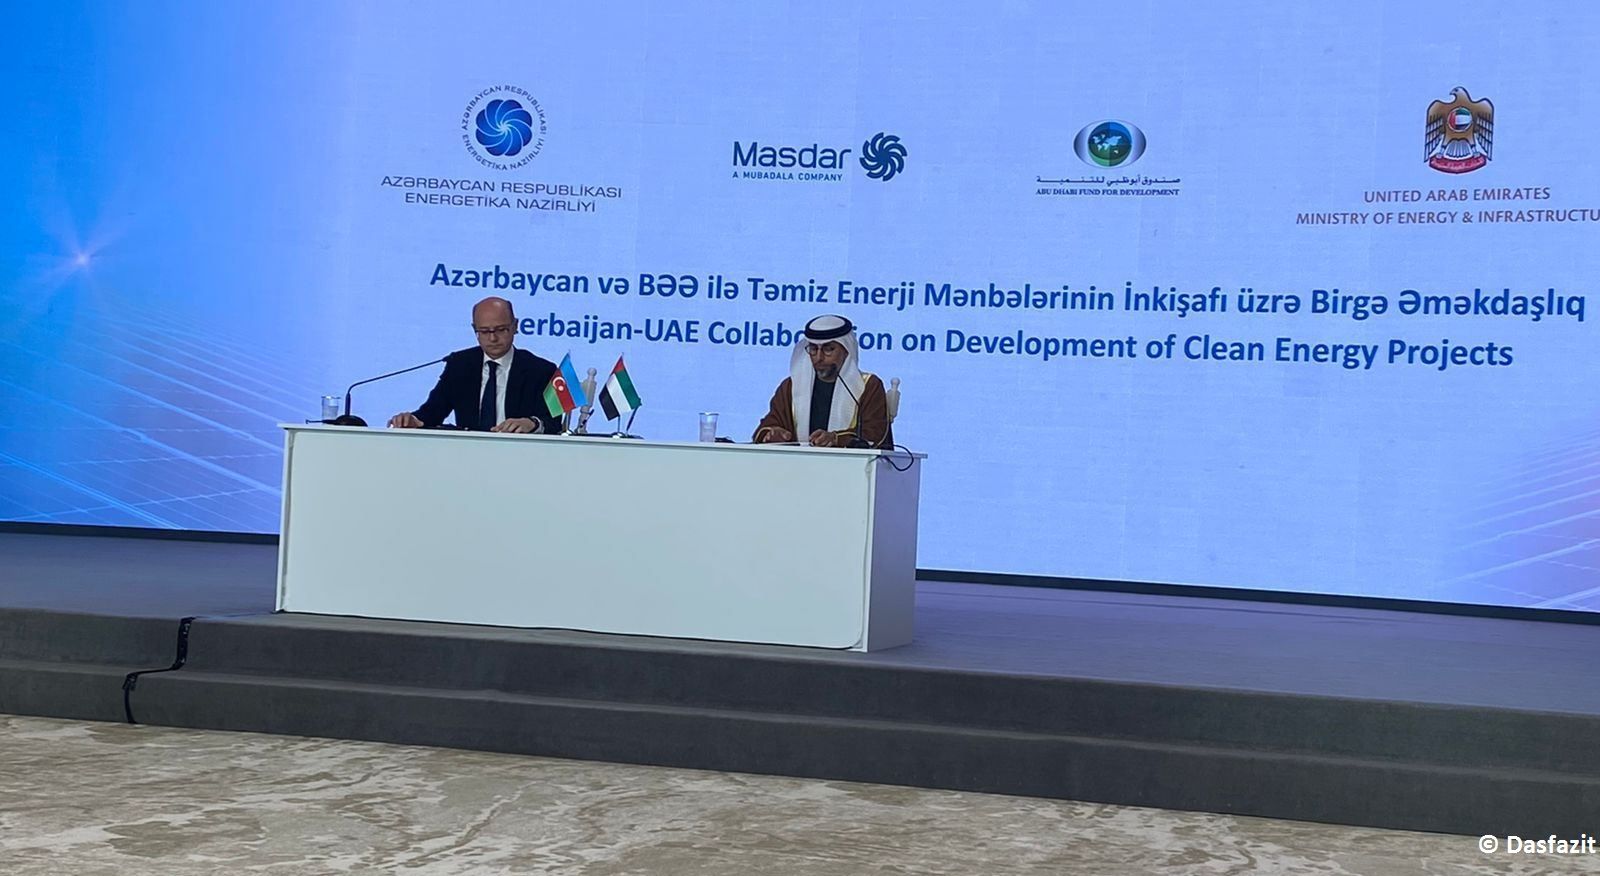 Zwischen Aserbaidschan und Masdar aus VAE wurden Absichtserklärungen im Bereich der erneuerbaren Energien unterzeichnet